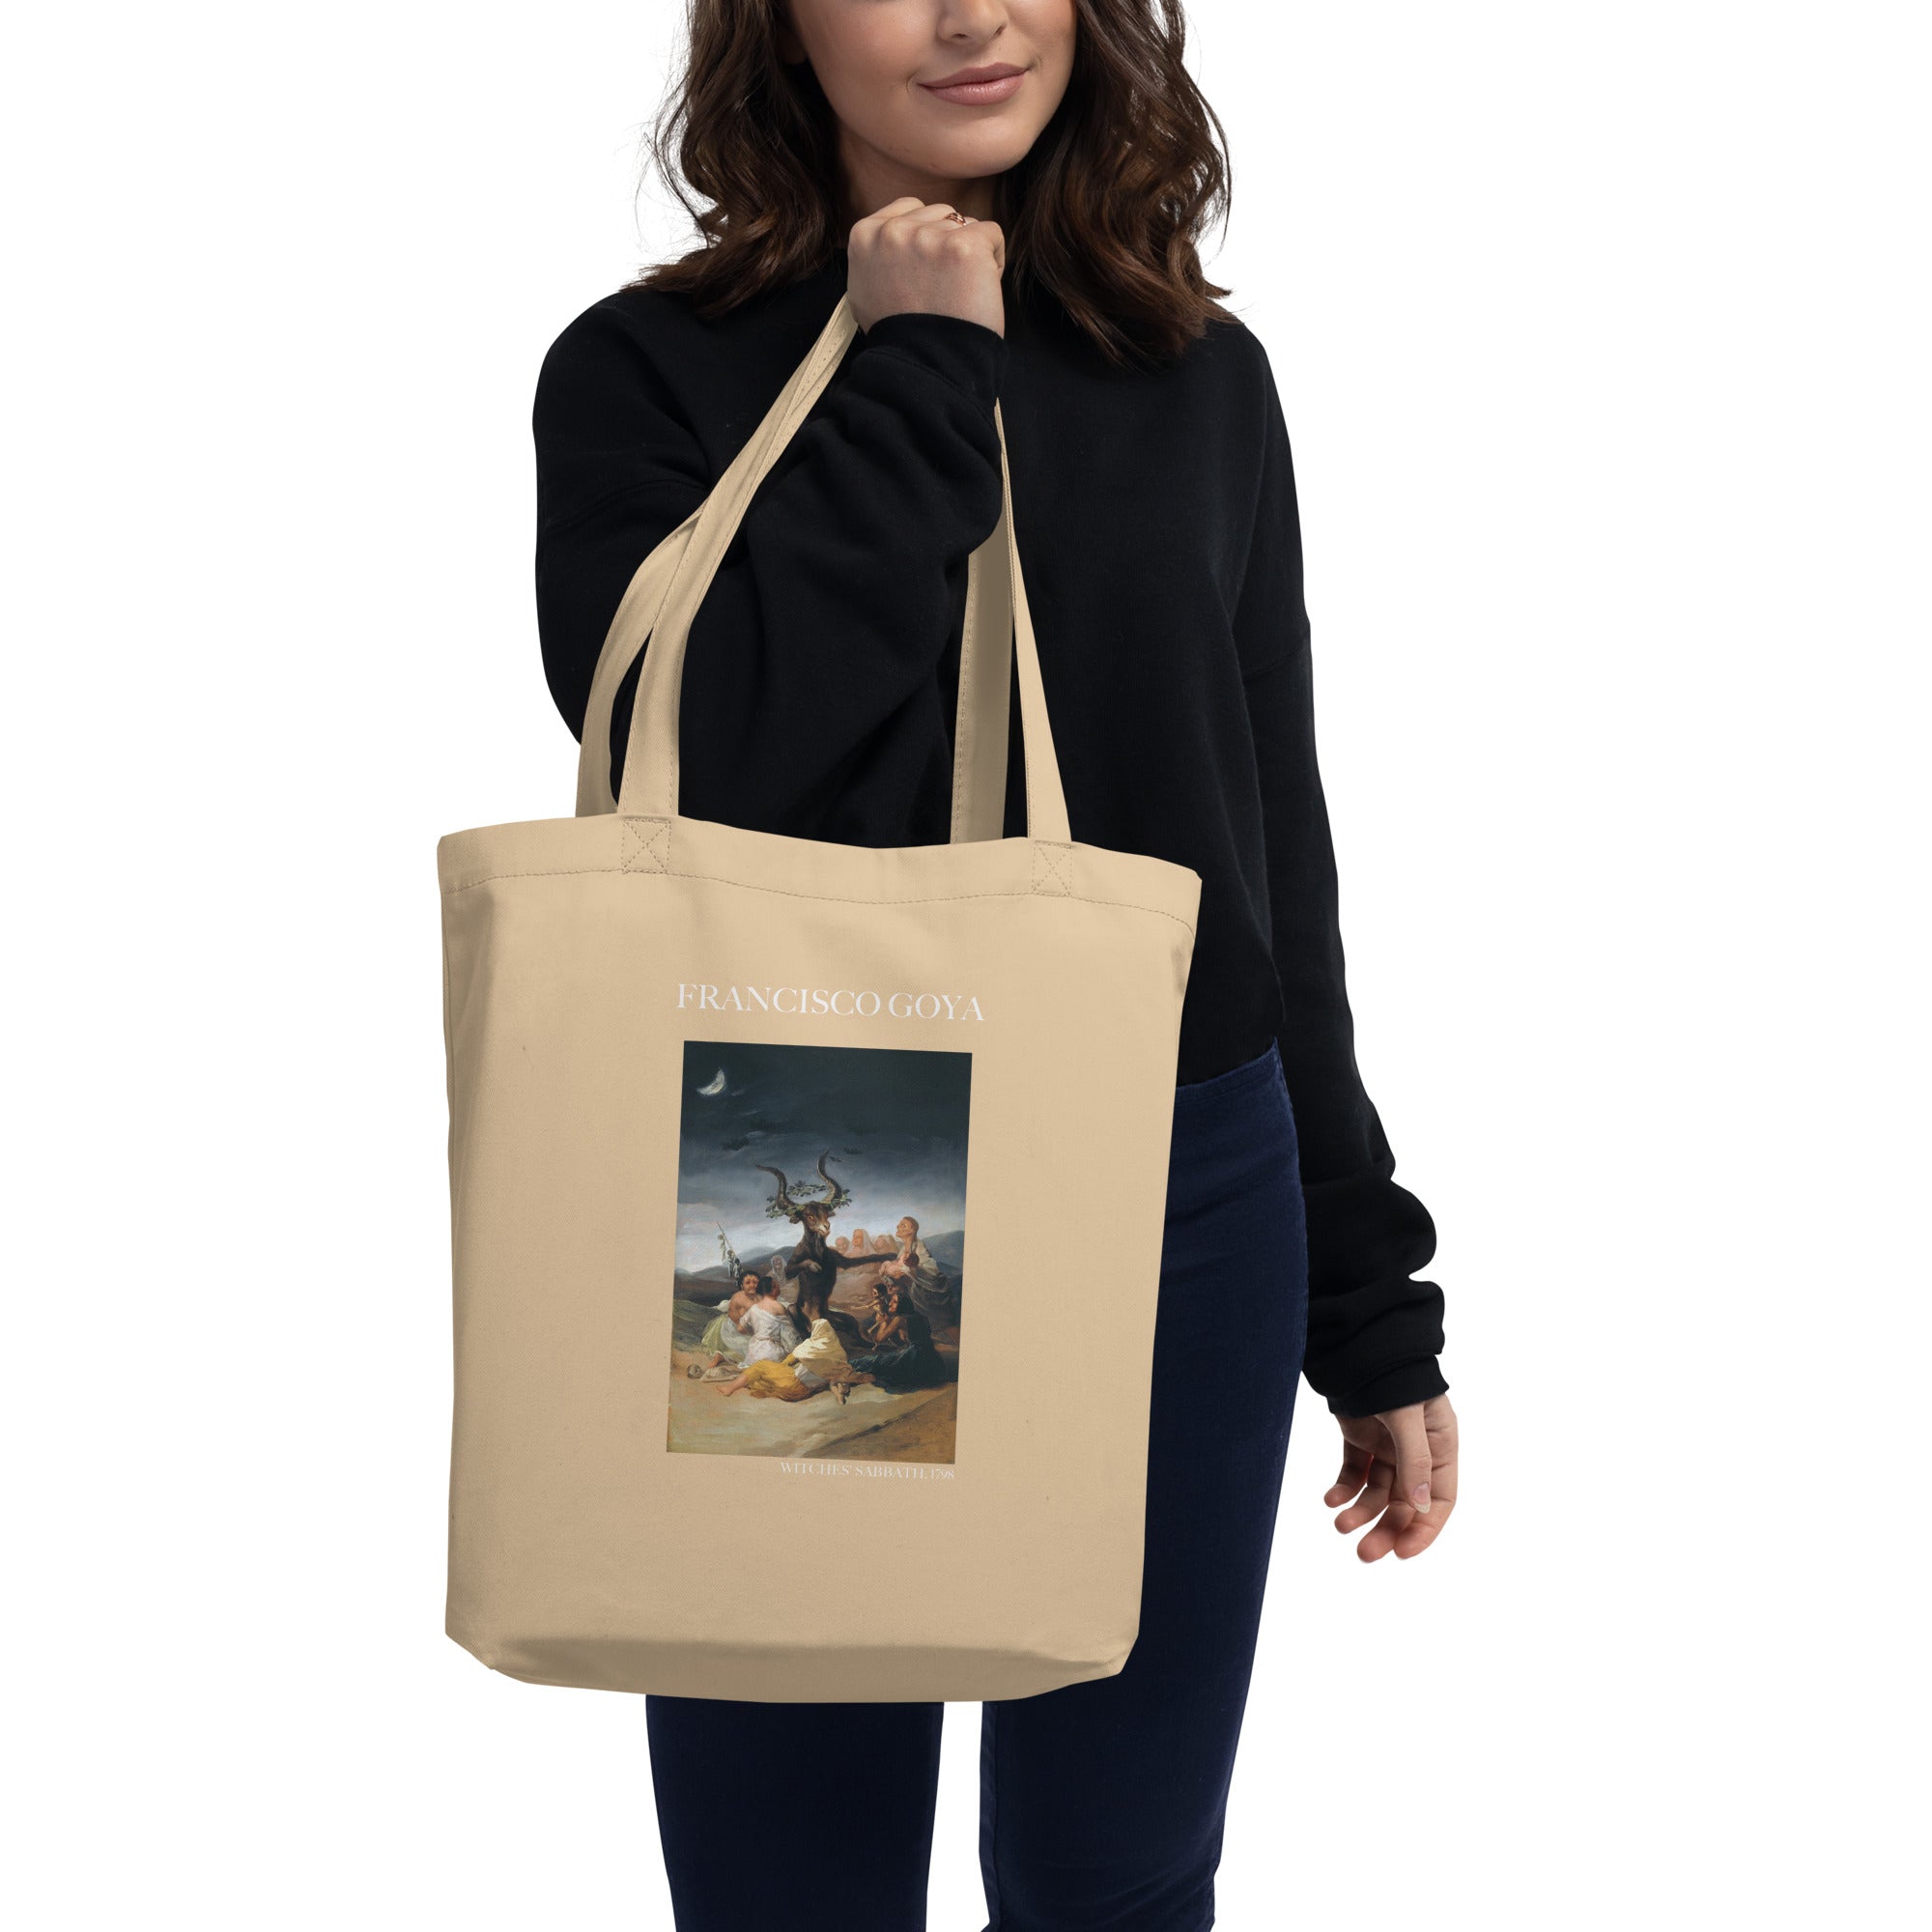 Francisco Goya 'Hexensabbat' berühmtes Gemälde Tote Bag | Umweltfreundliche Kunst Tote Bag